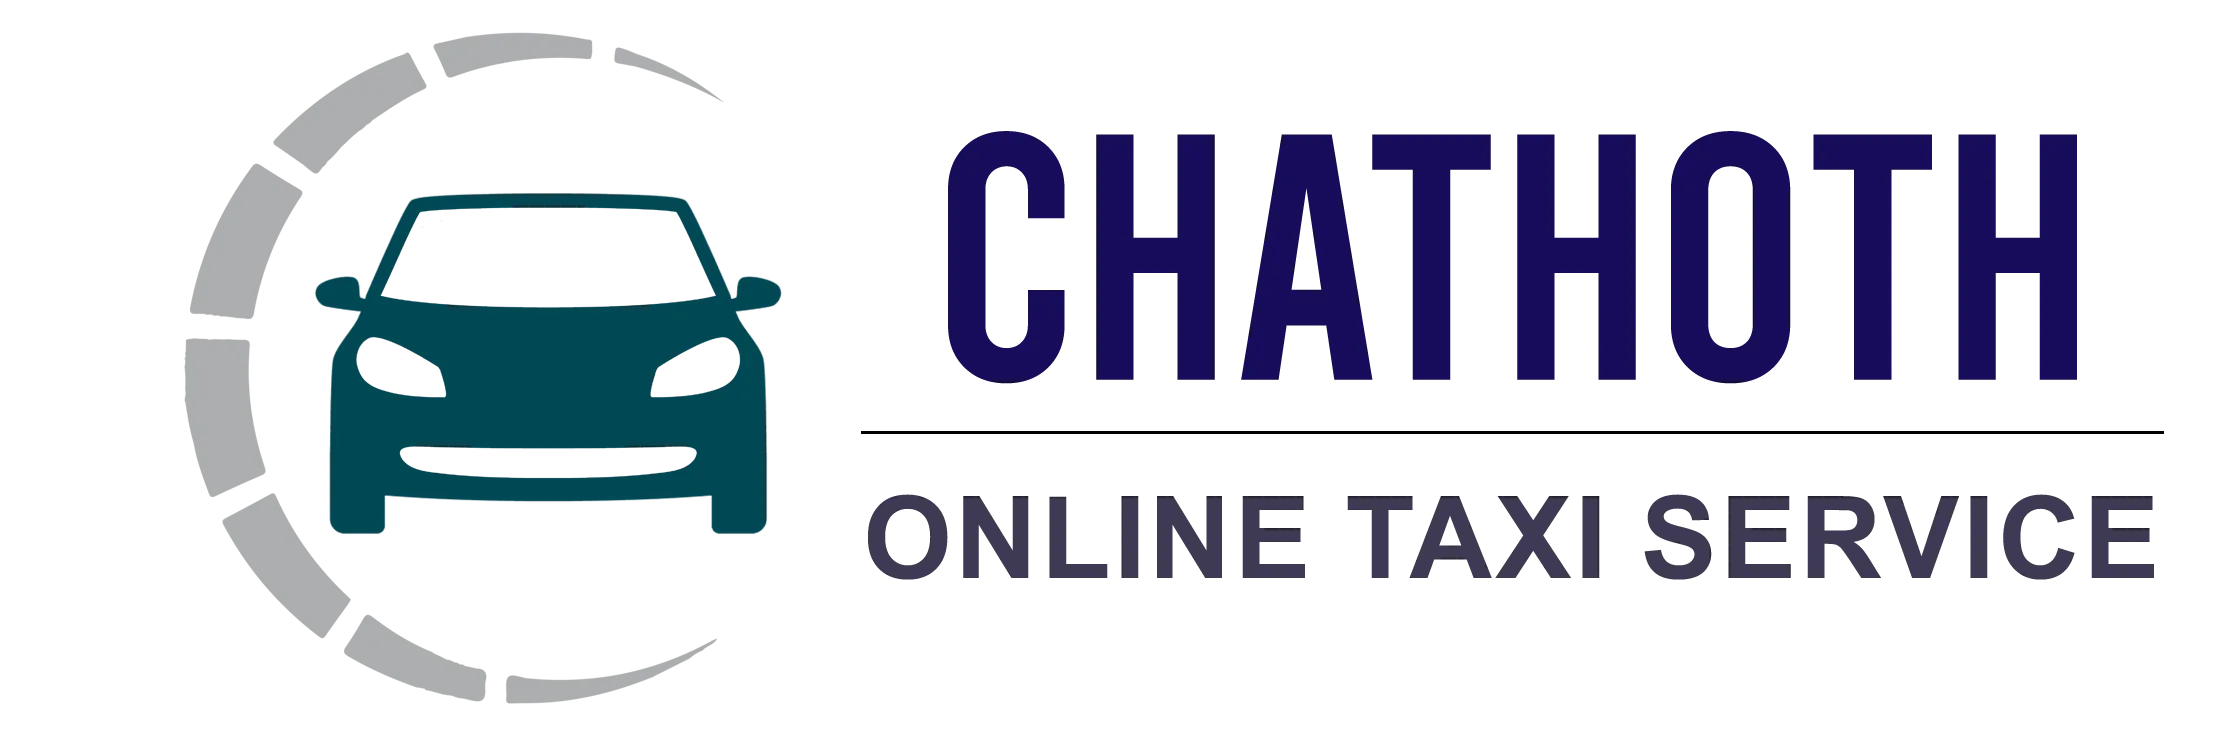 Chathoth Travels Best Online Taxi Service Kannur